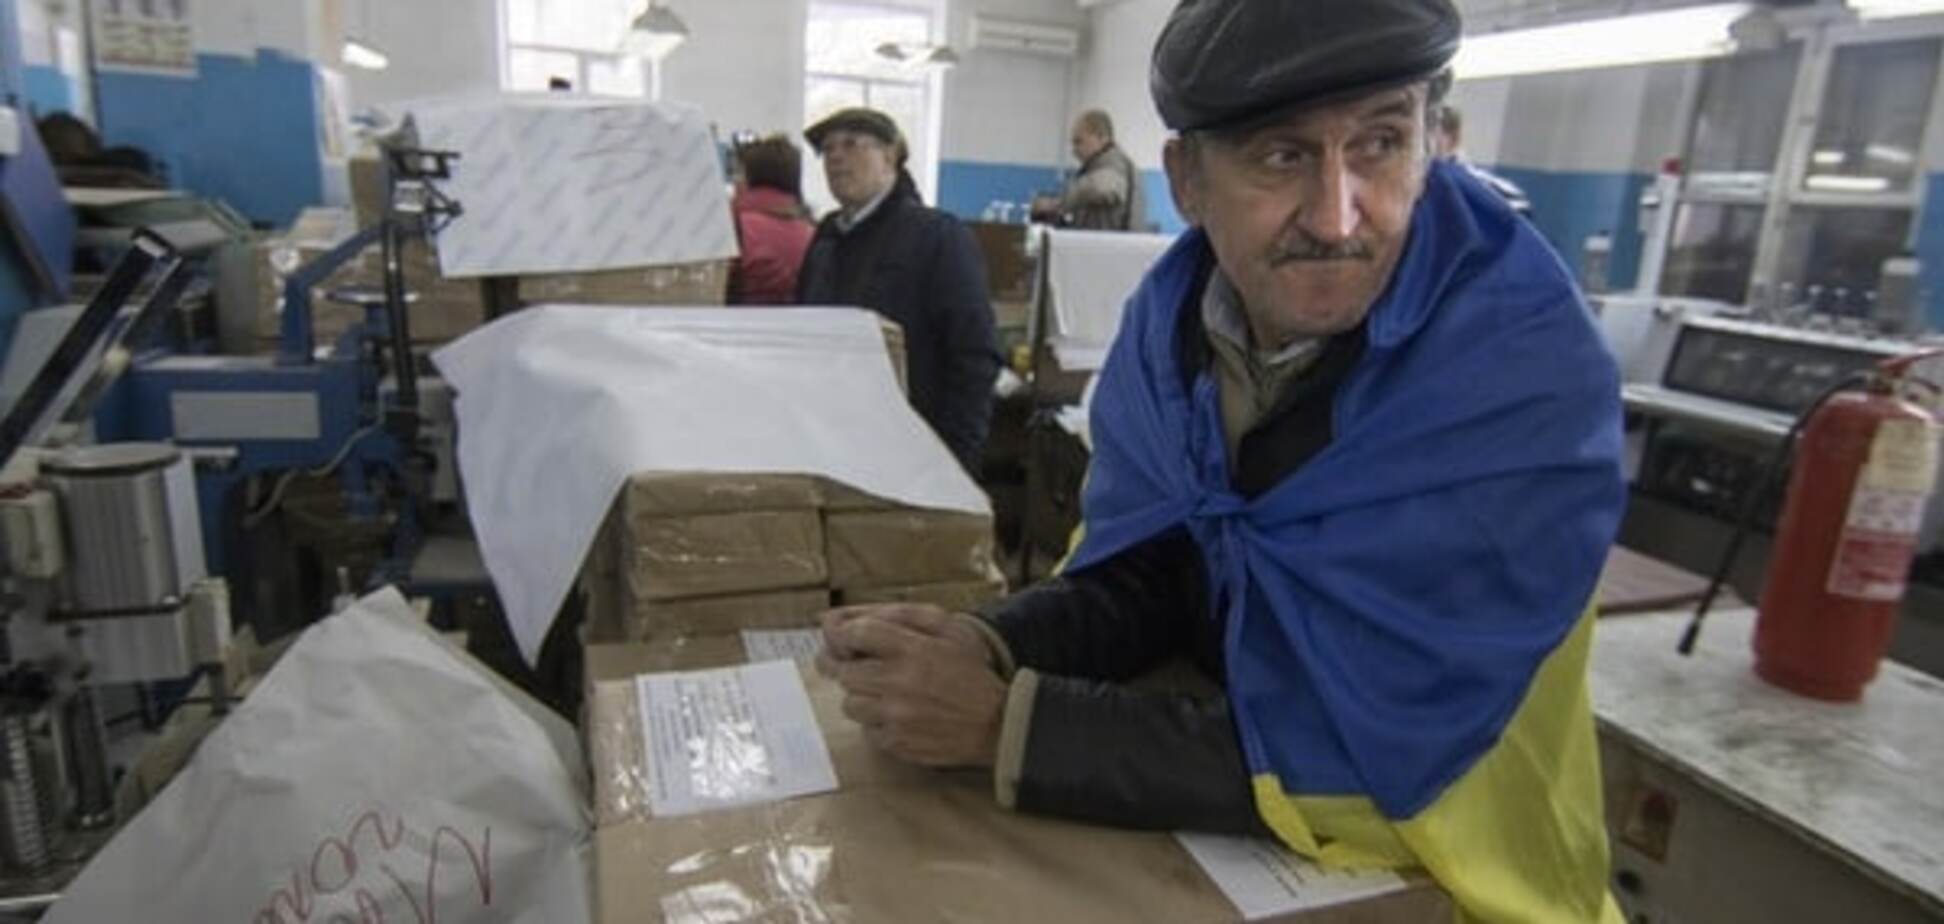 Українці хочуть перевиборів більше, чим безвізового режиму - опитування